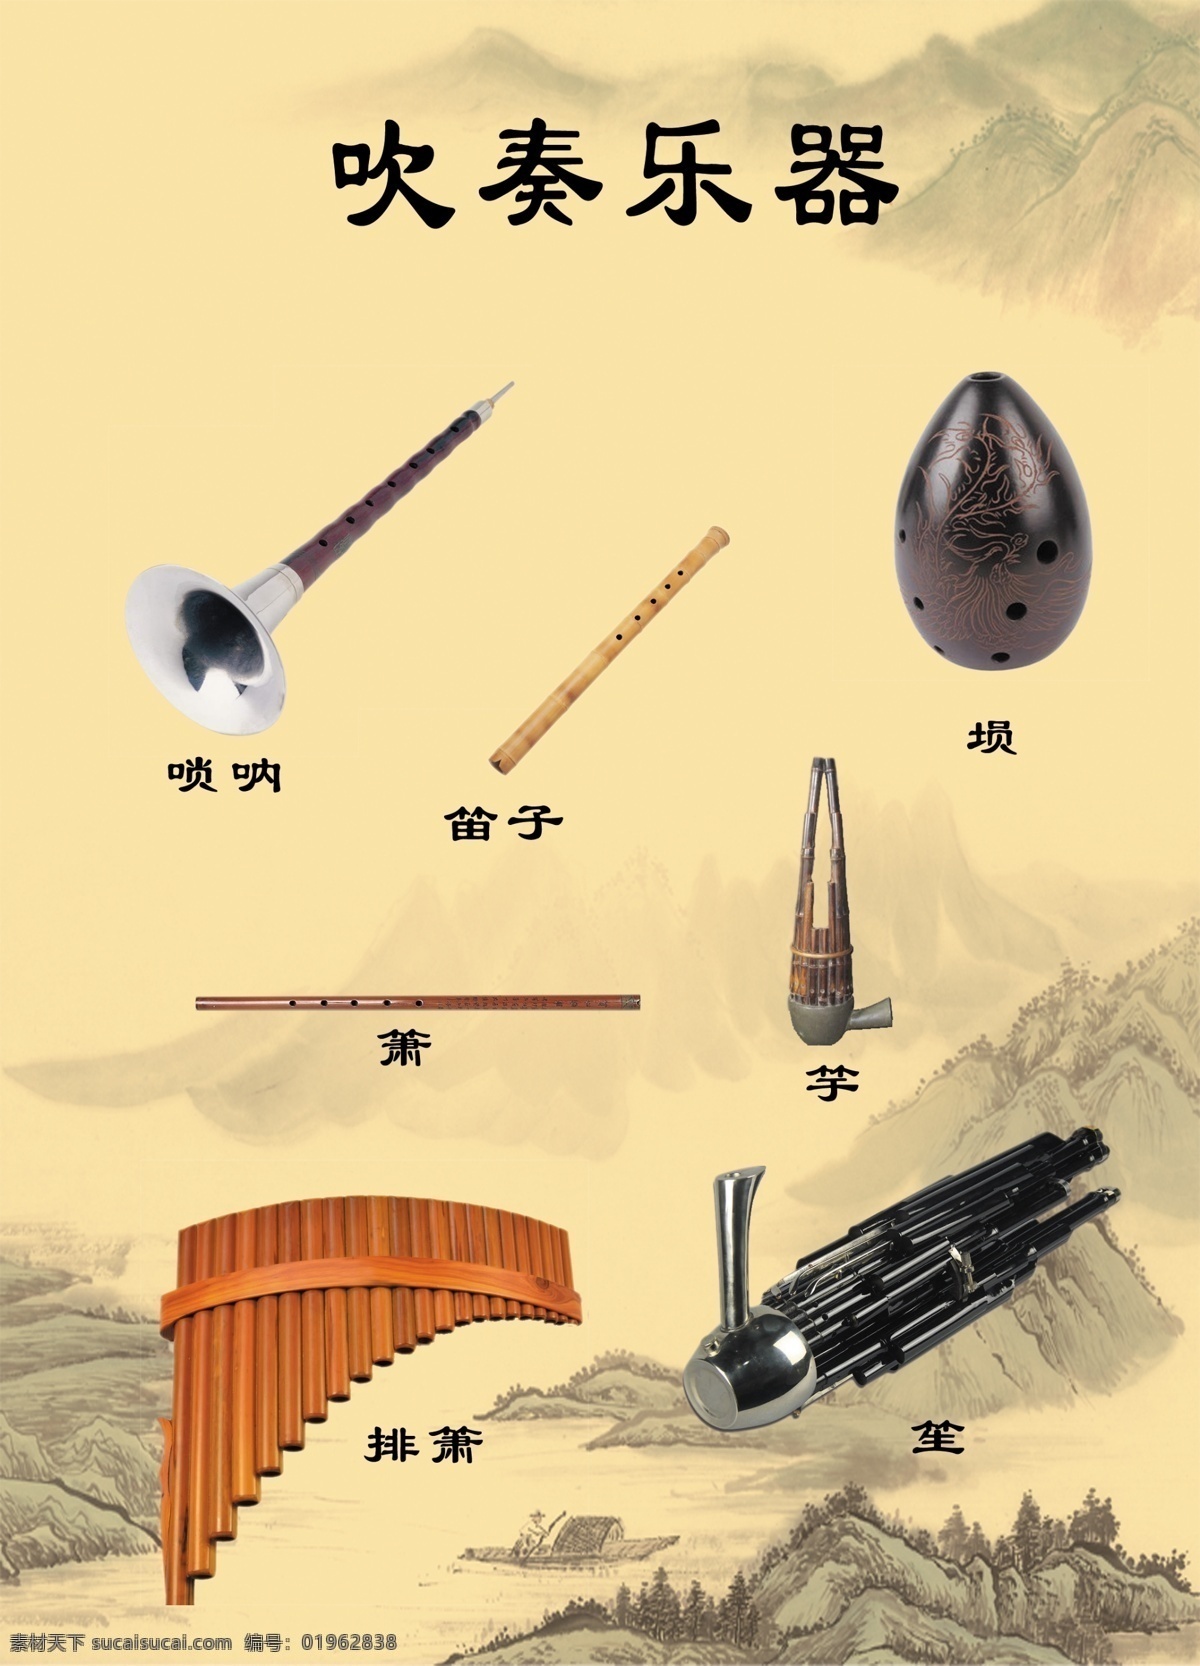 吹奏乐器 唢呐 笛子 箫 排箫 埙 笙 山水画 中国风 音乐教室 展板模板